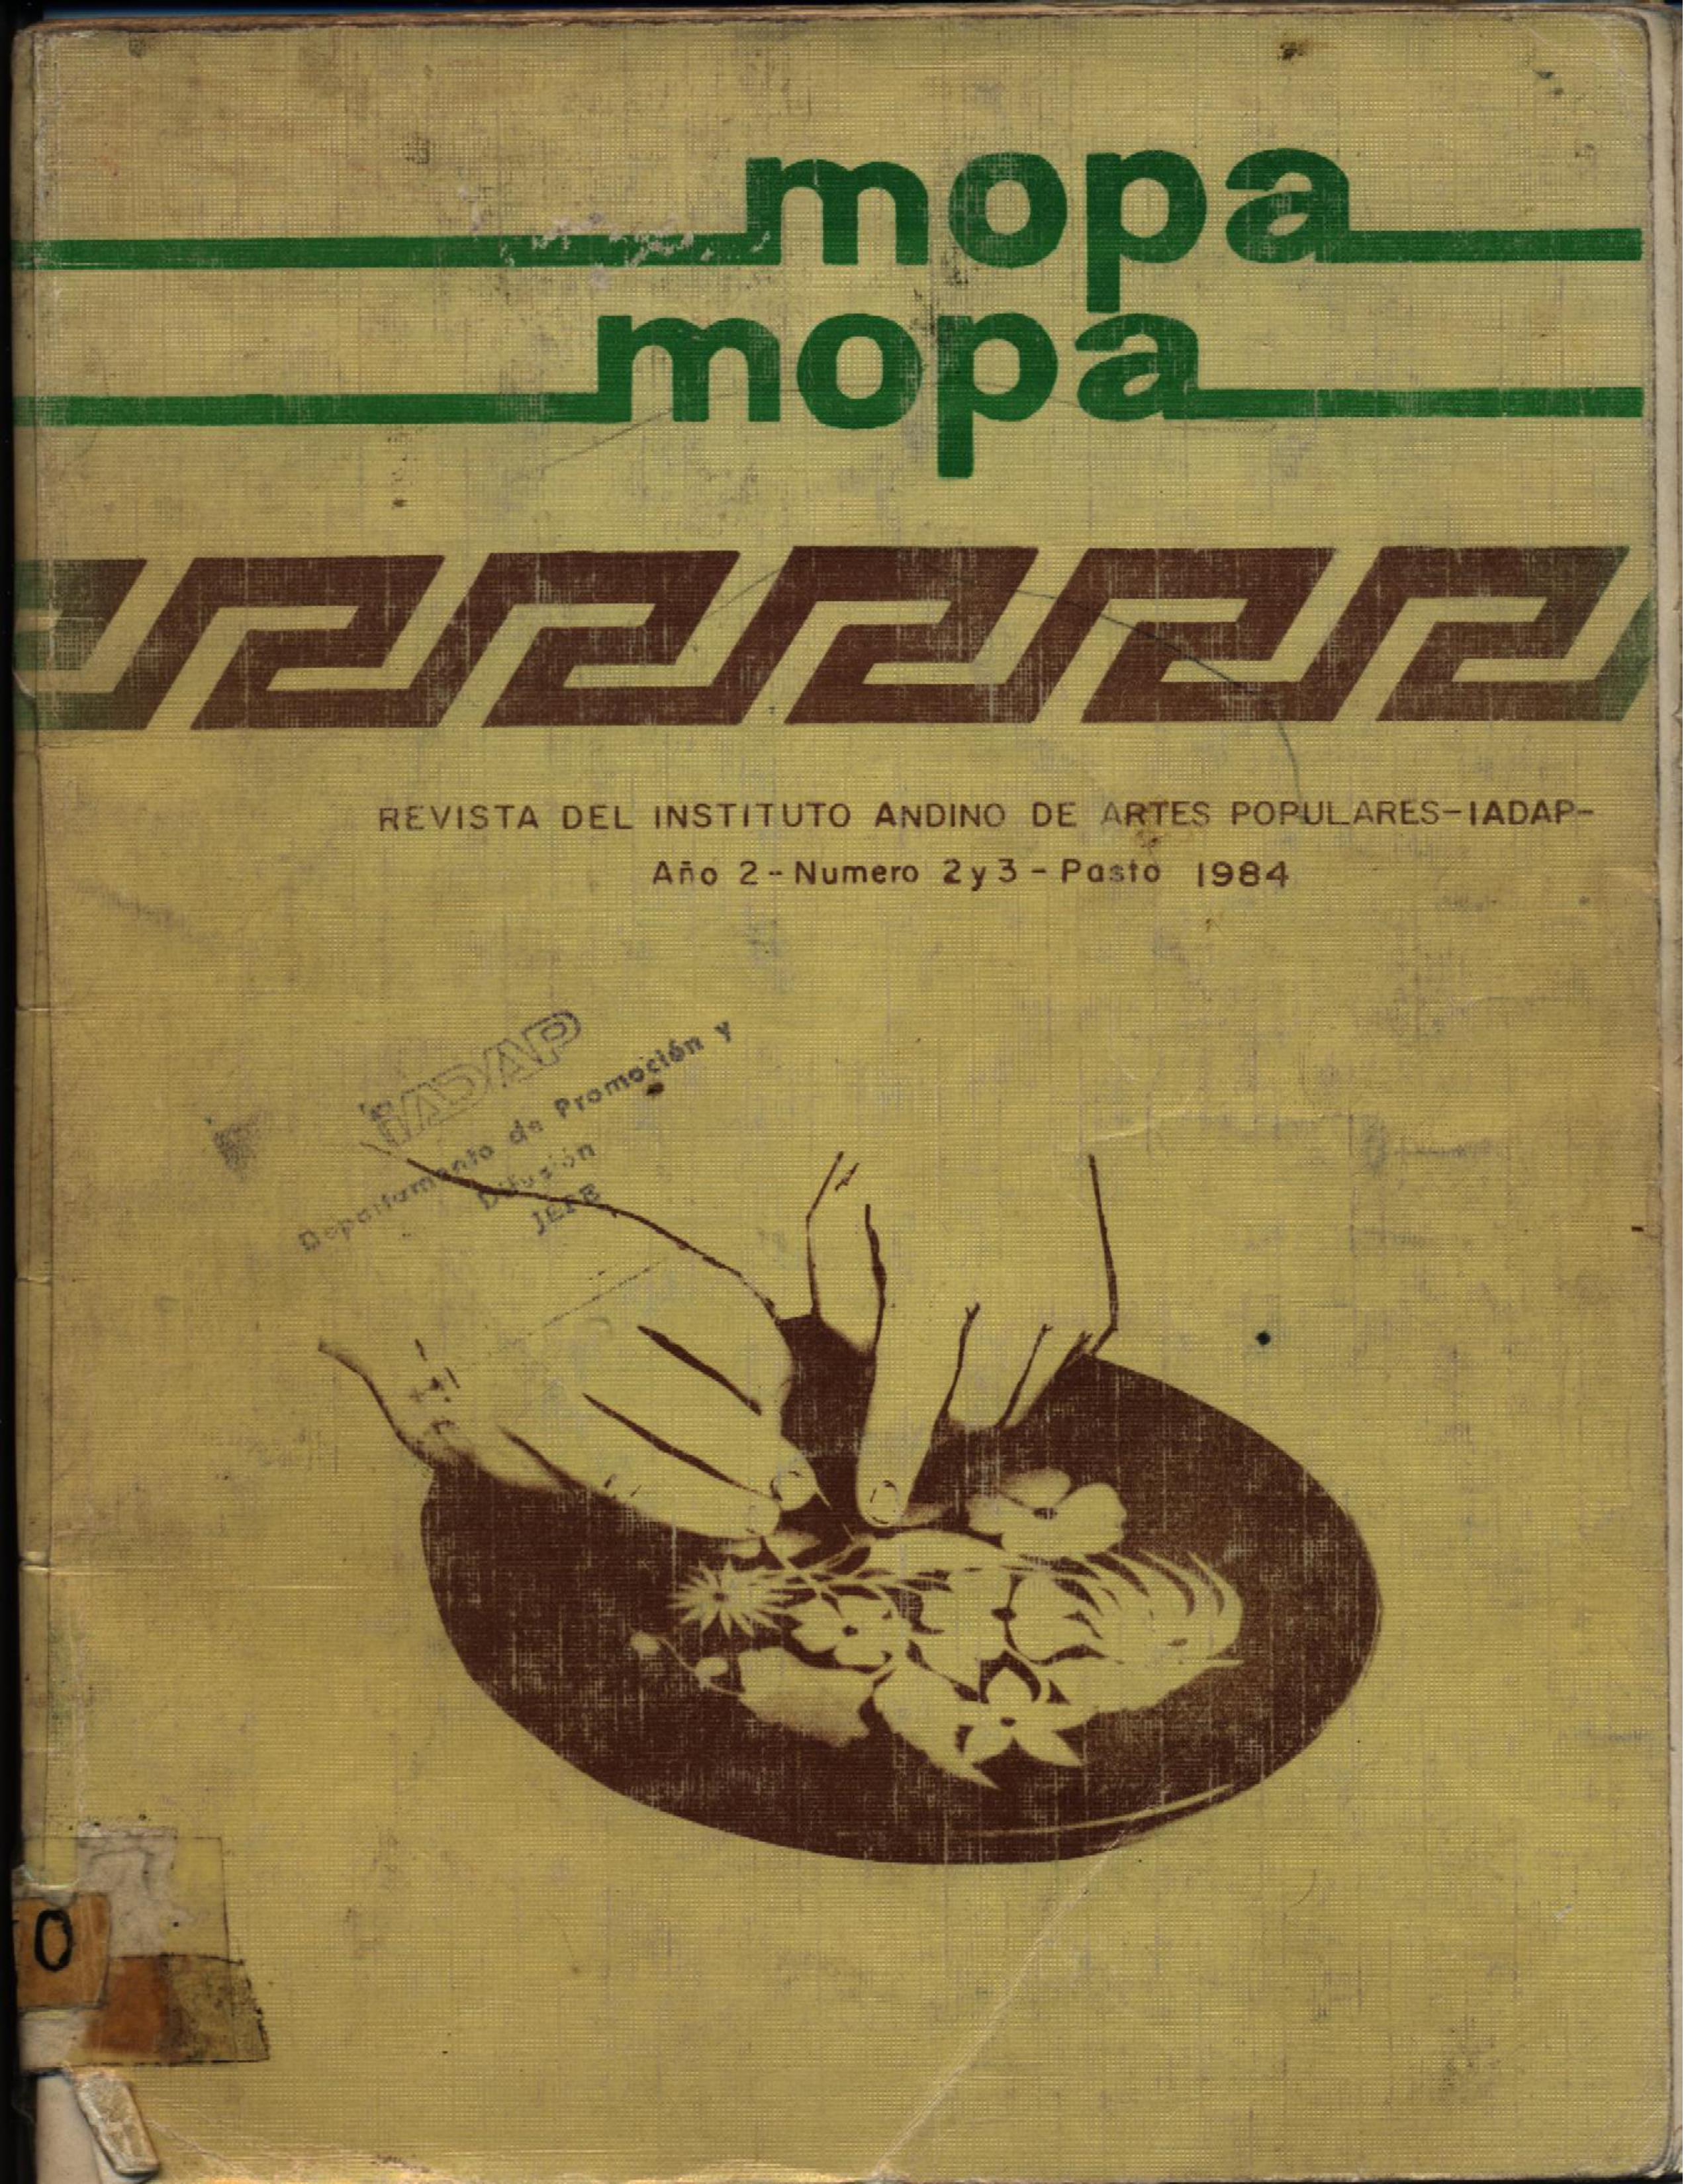 					Ver Vol. 1 Núm. 2 y 3 (2): Revista Mopa Mopa No. 2 y 3
				